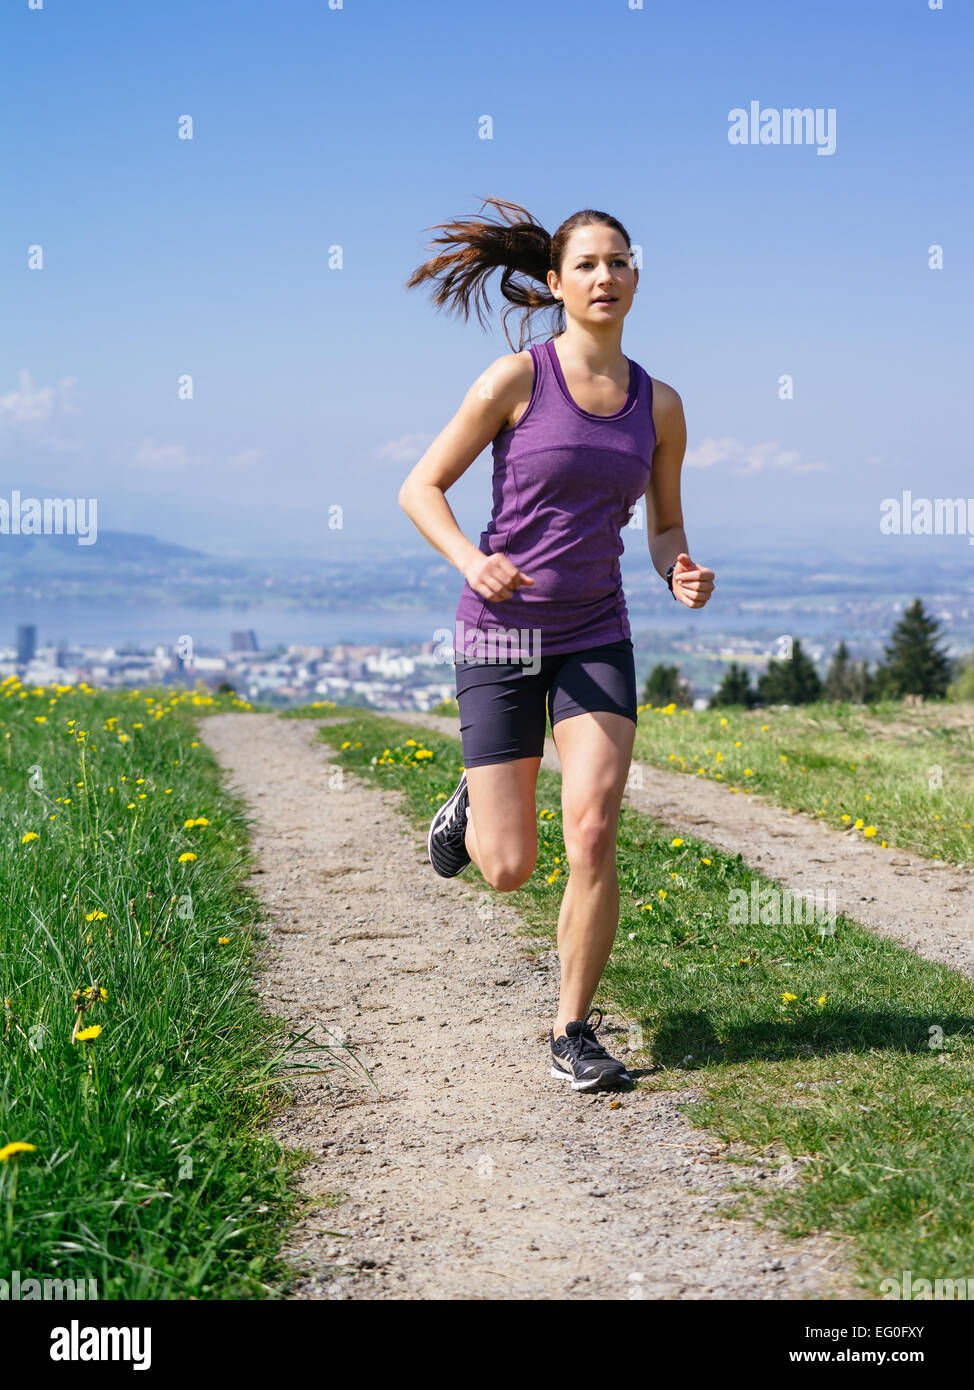 Foto di una giovane donna jogging ed esercitando su di un percorso di paese. Il lago e la città di distanza. Una leggera sfocatura visibile. Foto Stock